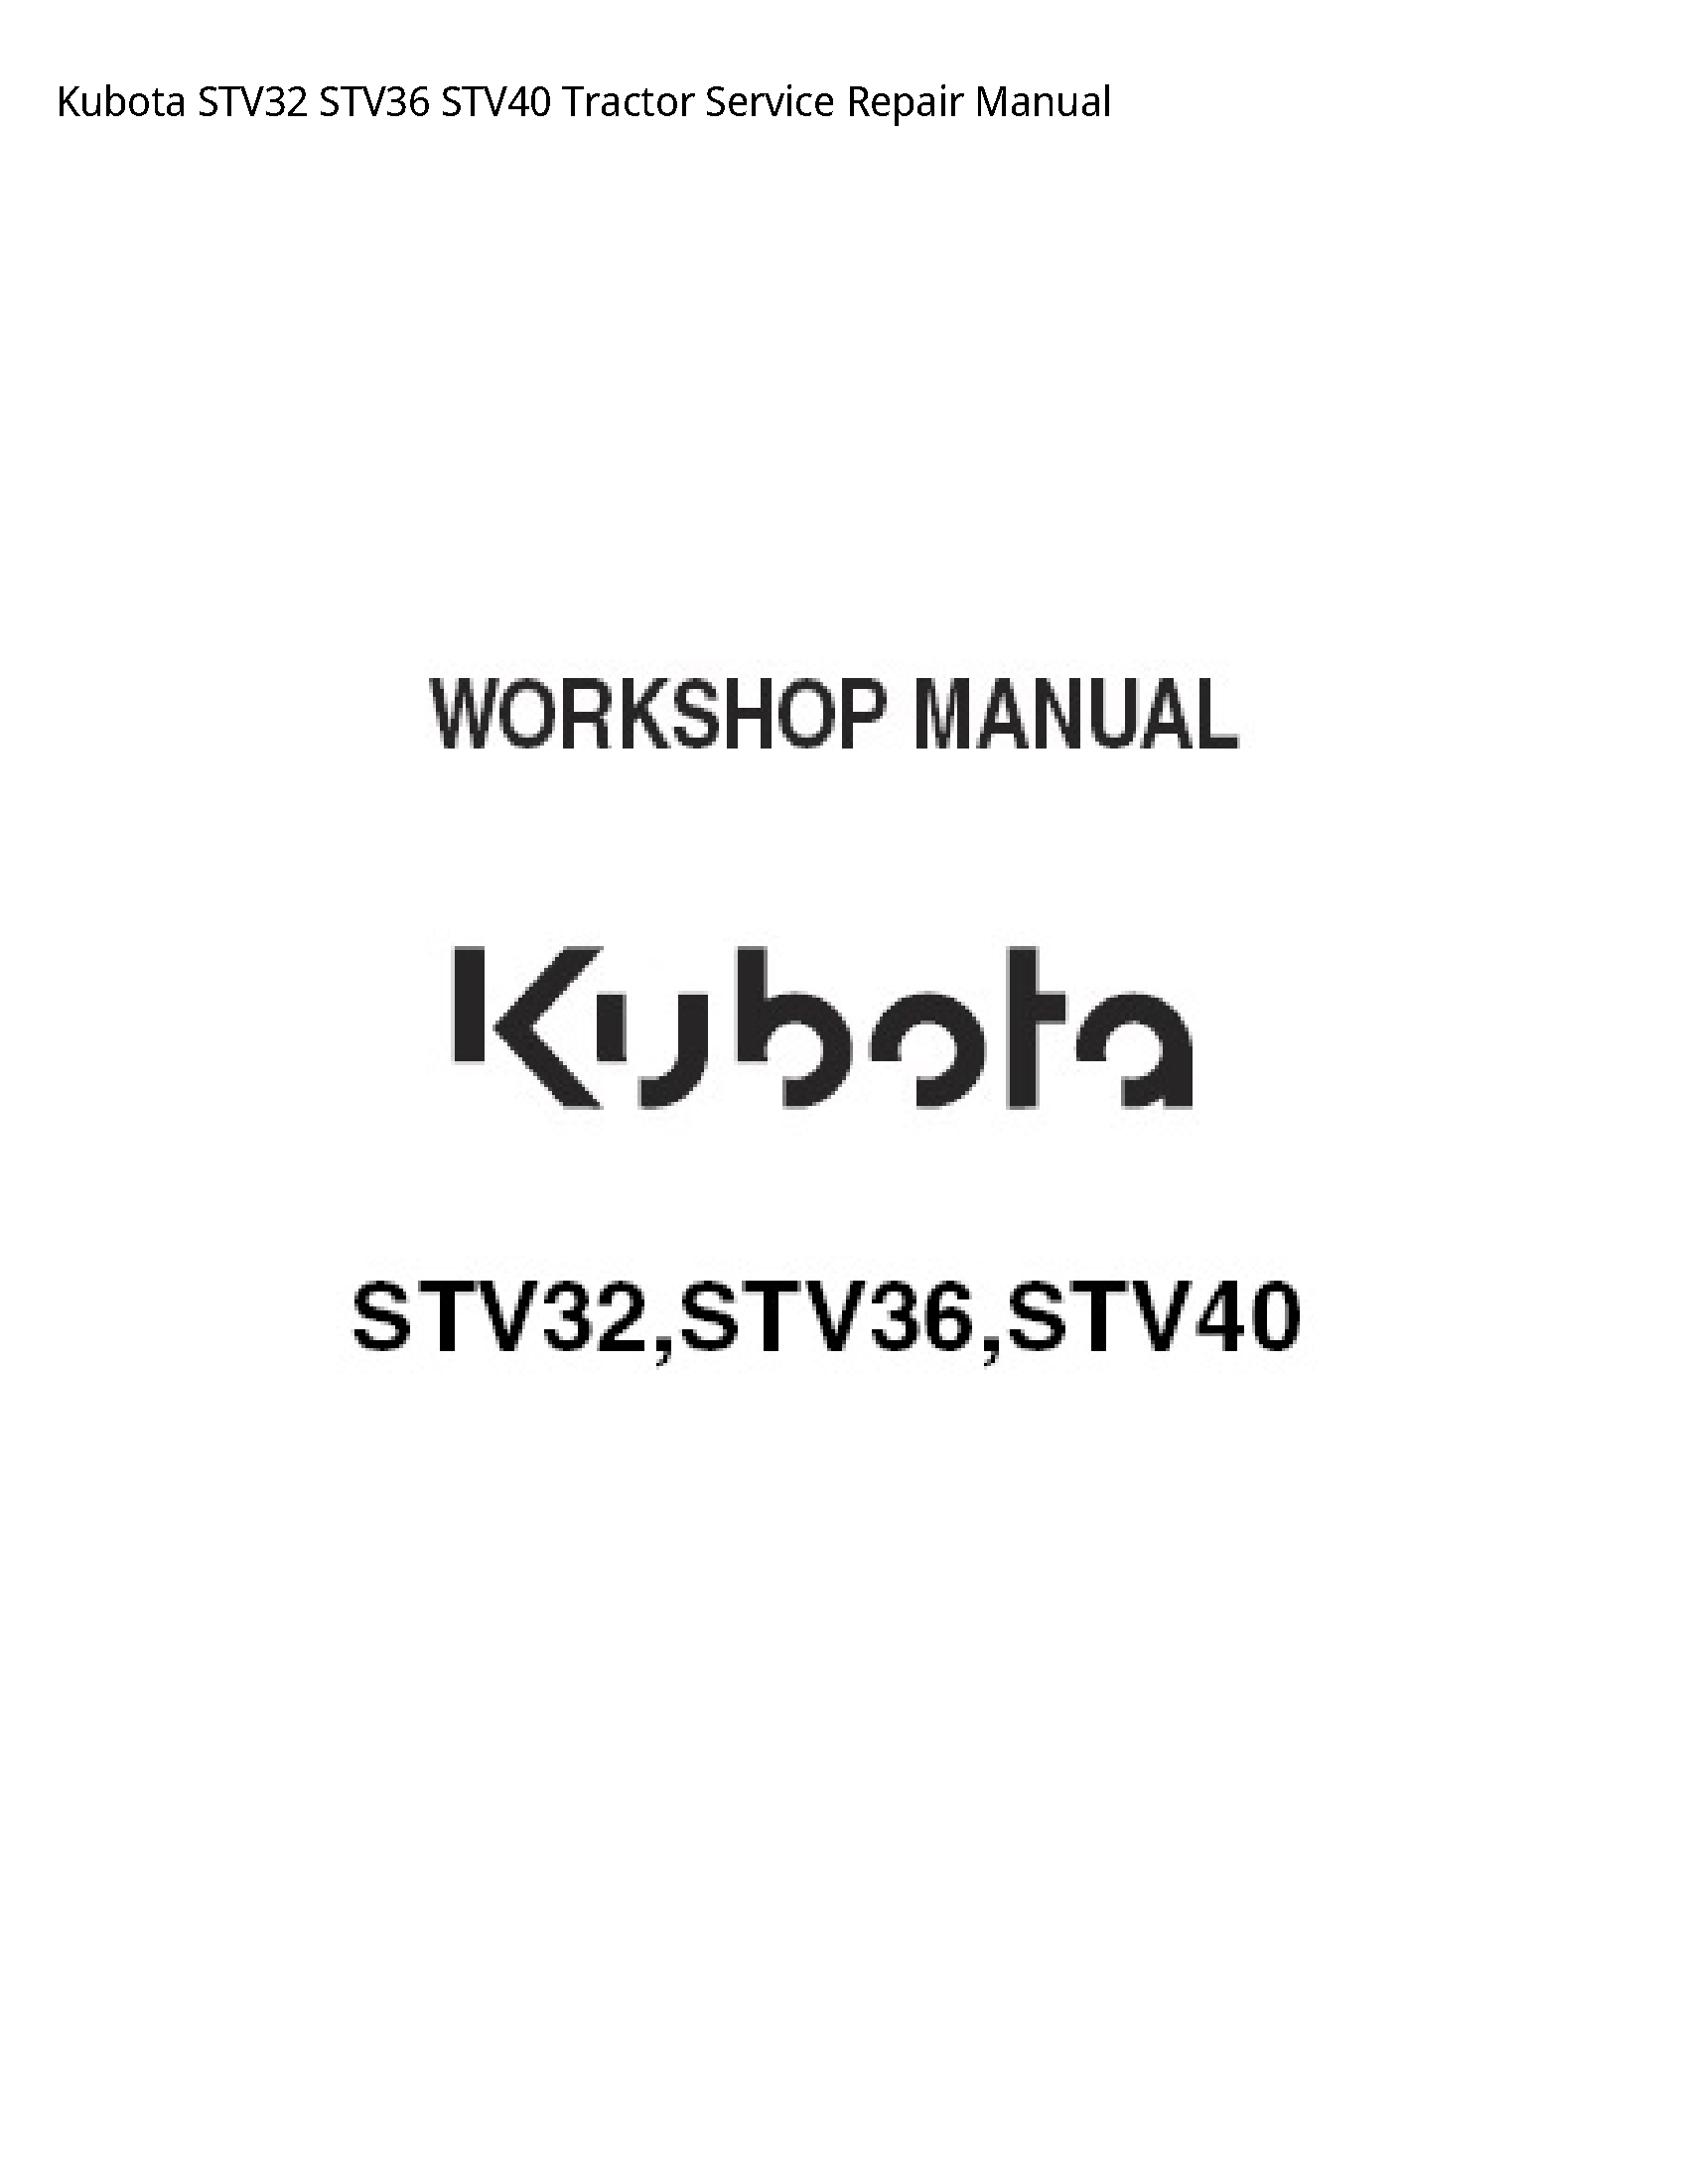 Kubota STV32 Tractor manual